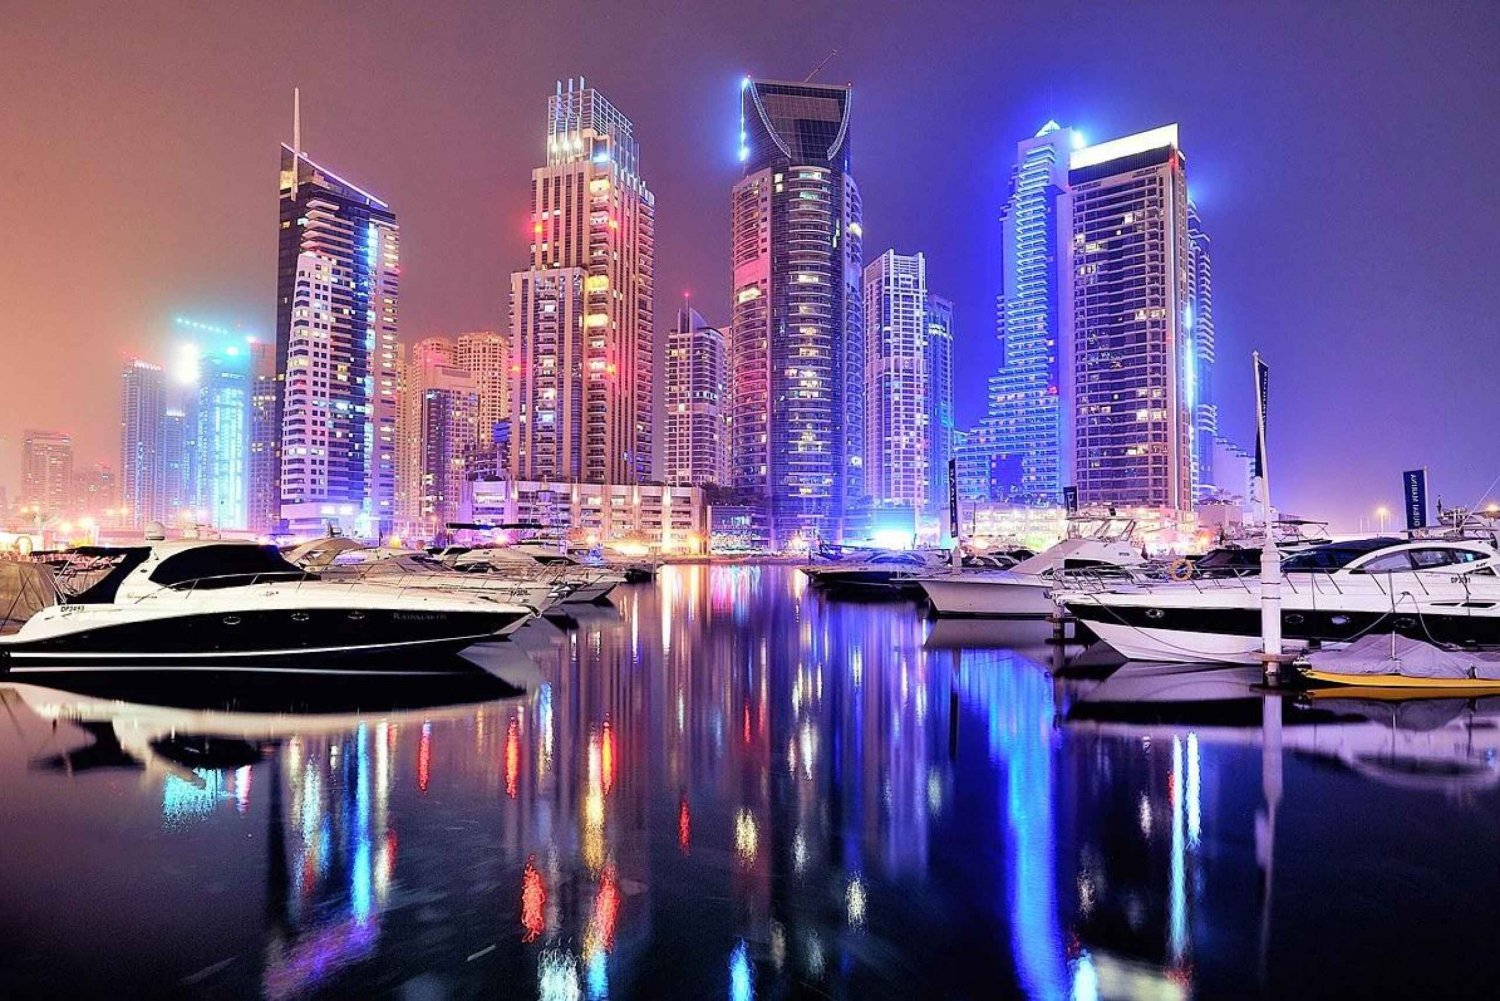 Tour di Dubai di notte con spettacolo delle fontane